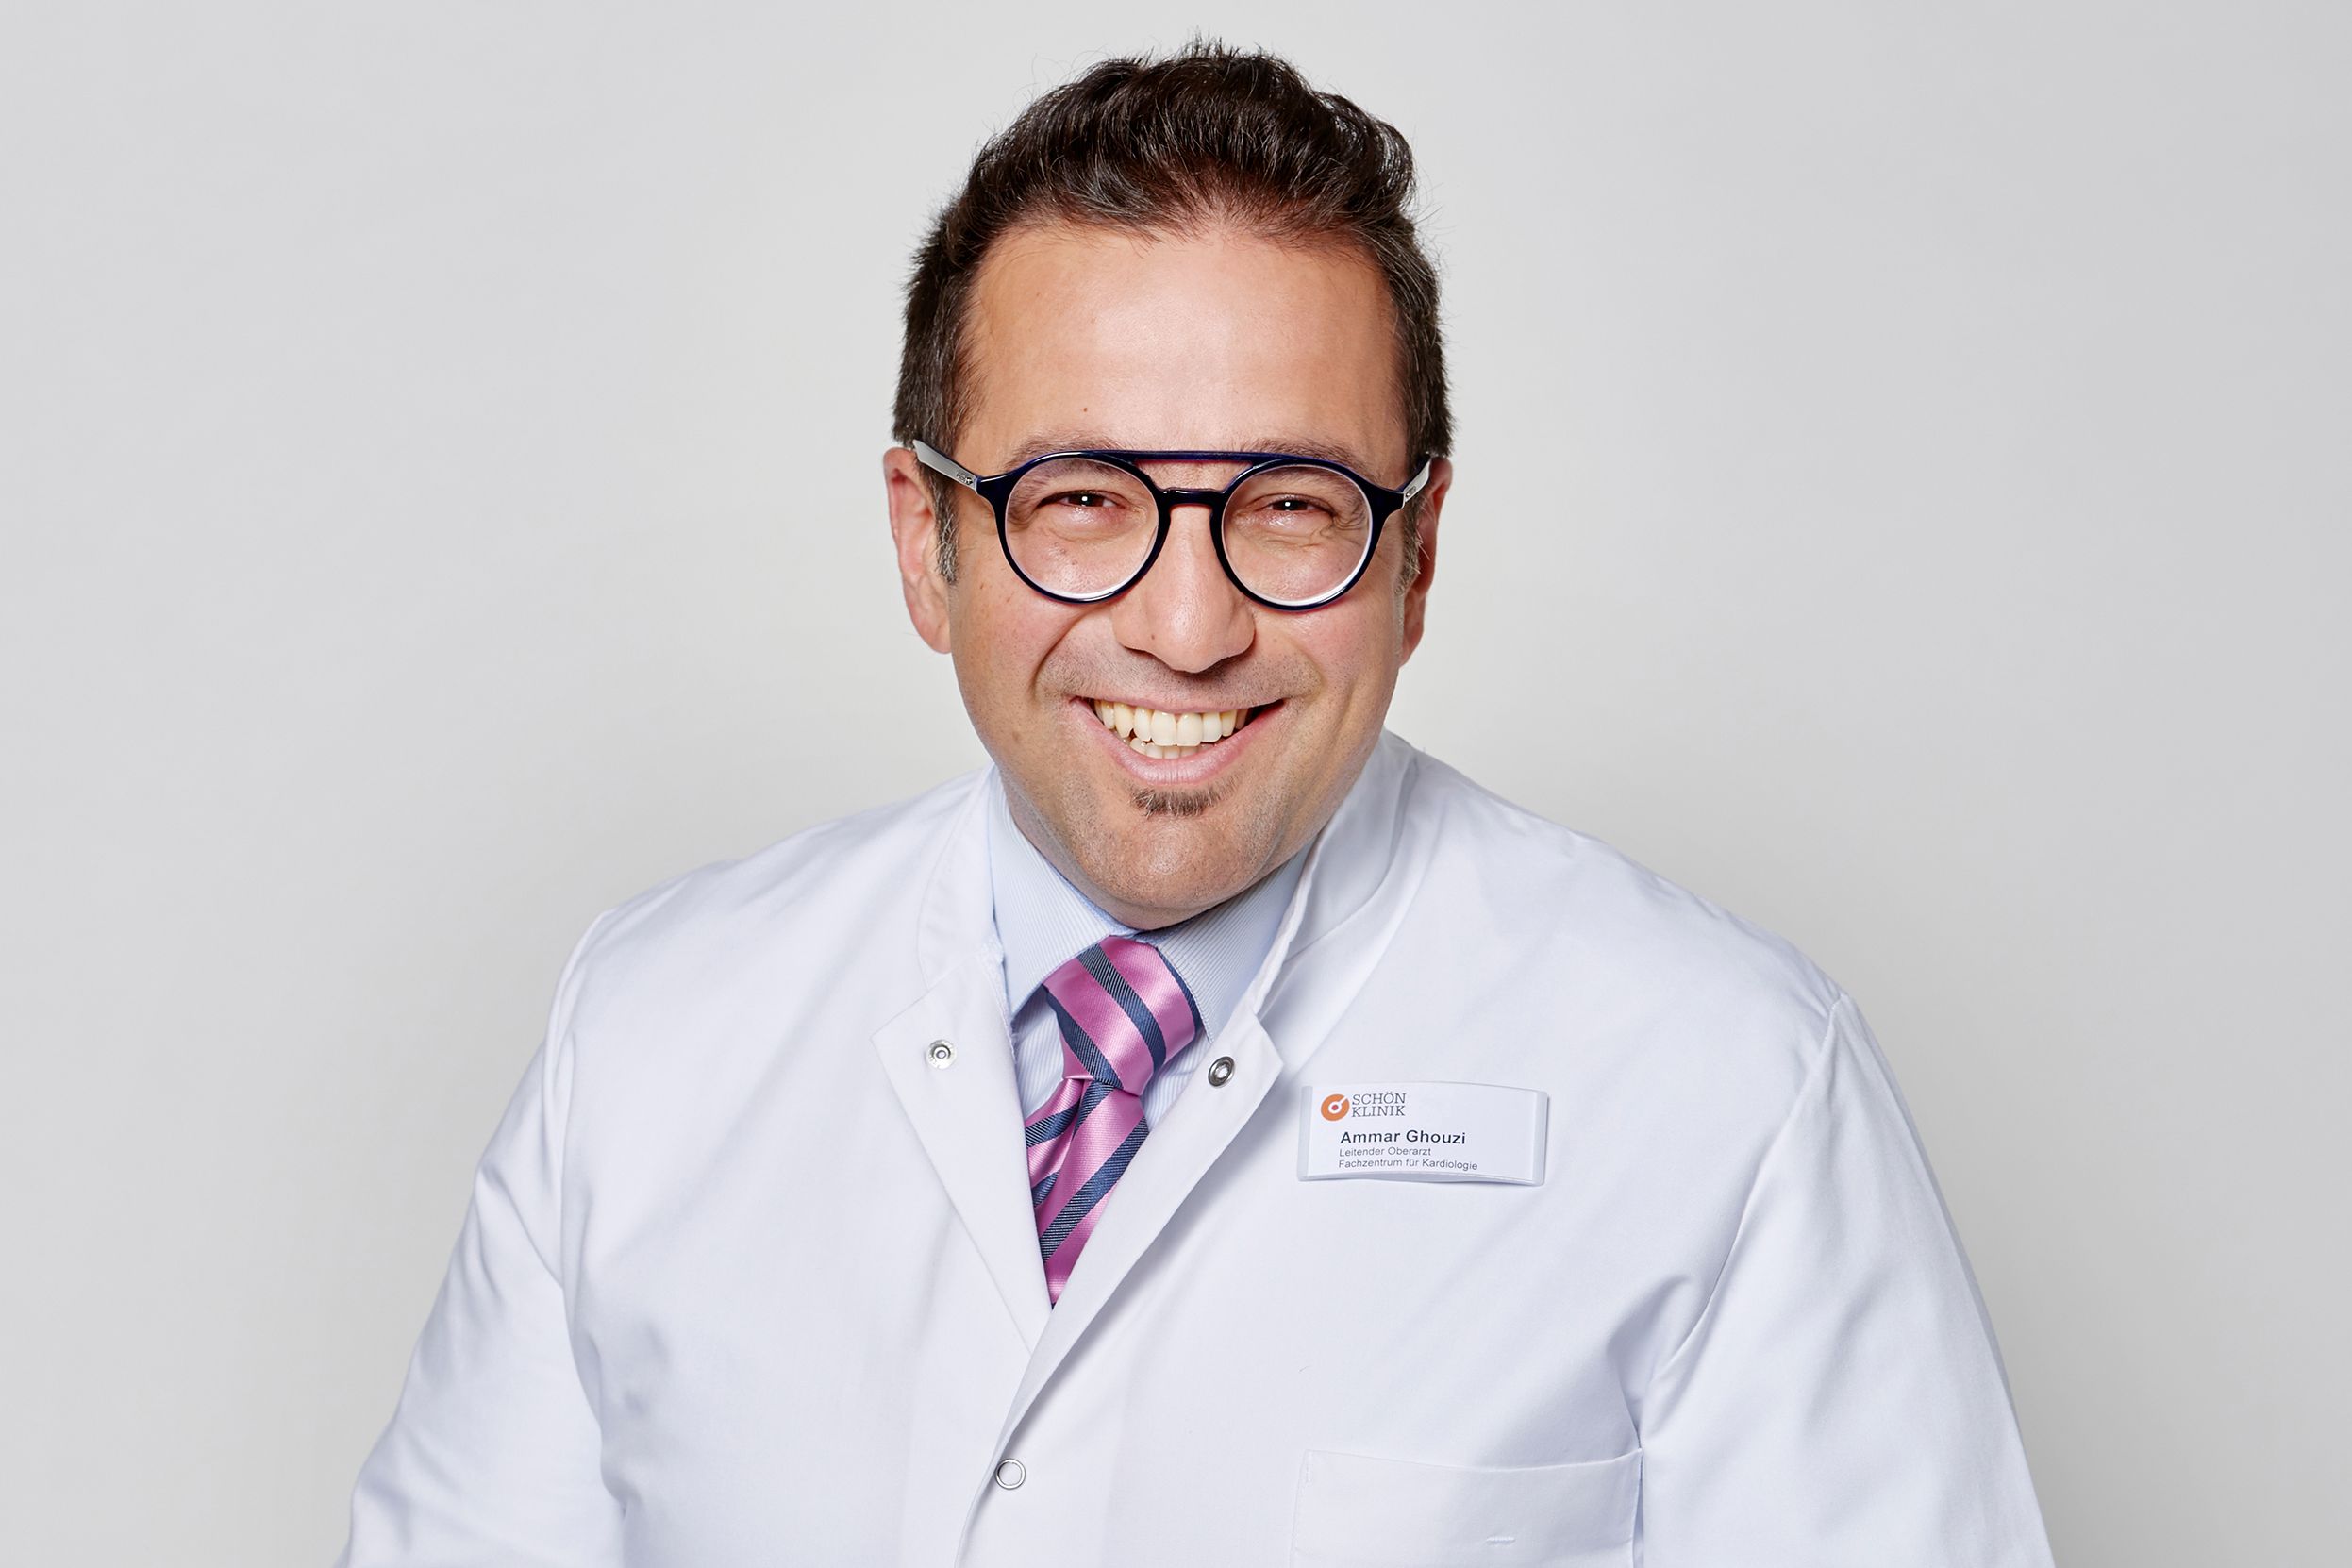 Studienarzt Ammar Ghouzi, Ärztlicher Leiter der Interdisziplinären Notaufnahme an der Schön Klinik Düsseldorf / Foto @ schoenklinik